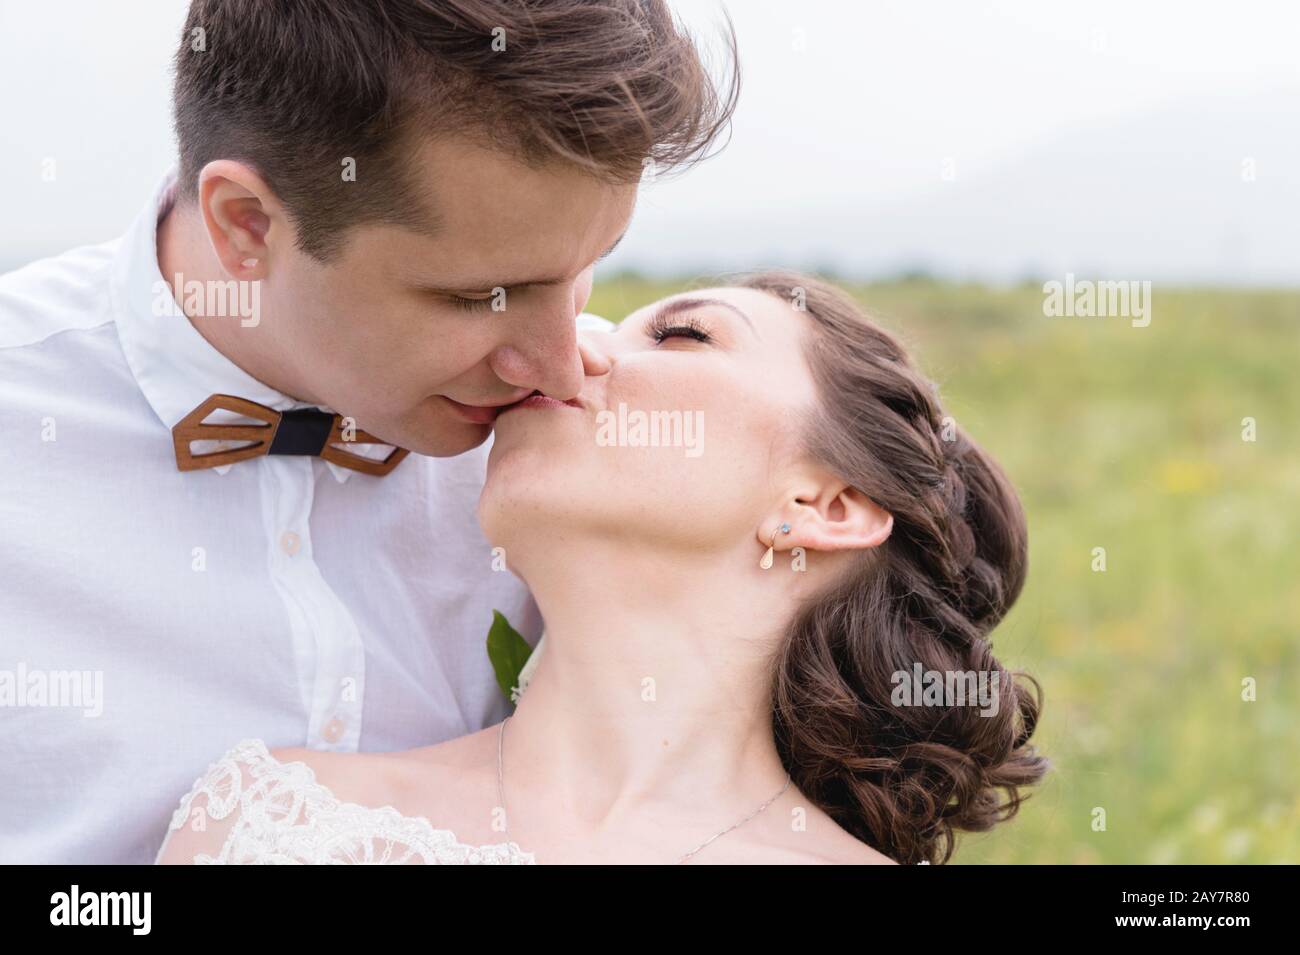 quelques jeunes mariés se tenant dans une armée embrassent dans la nature Banque D'Images